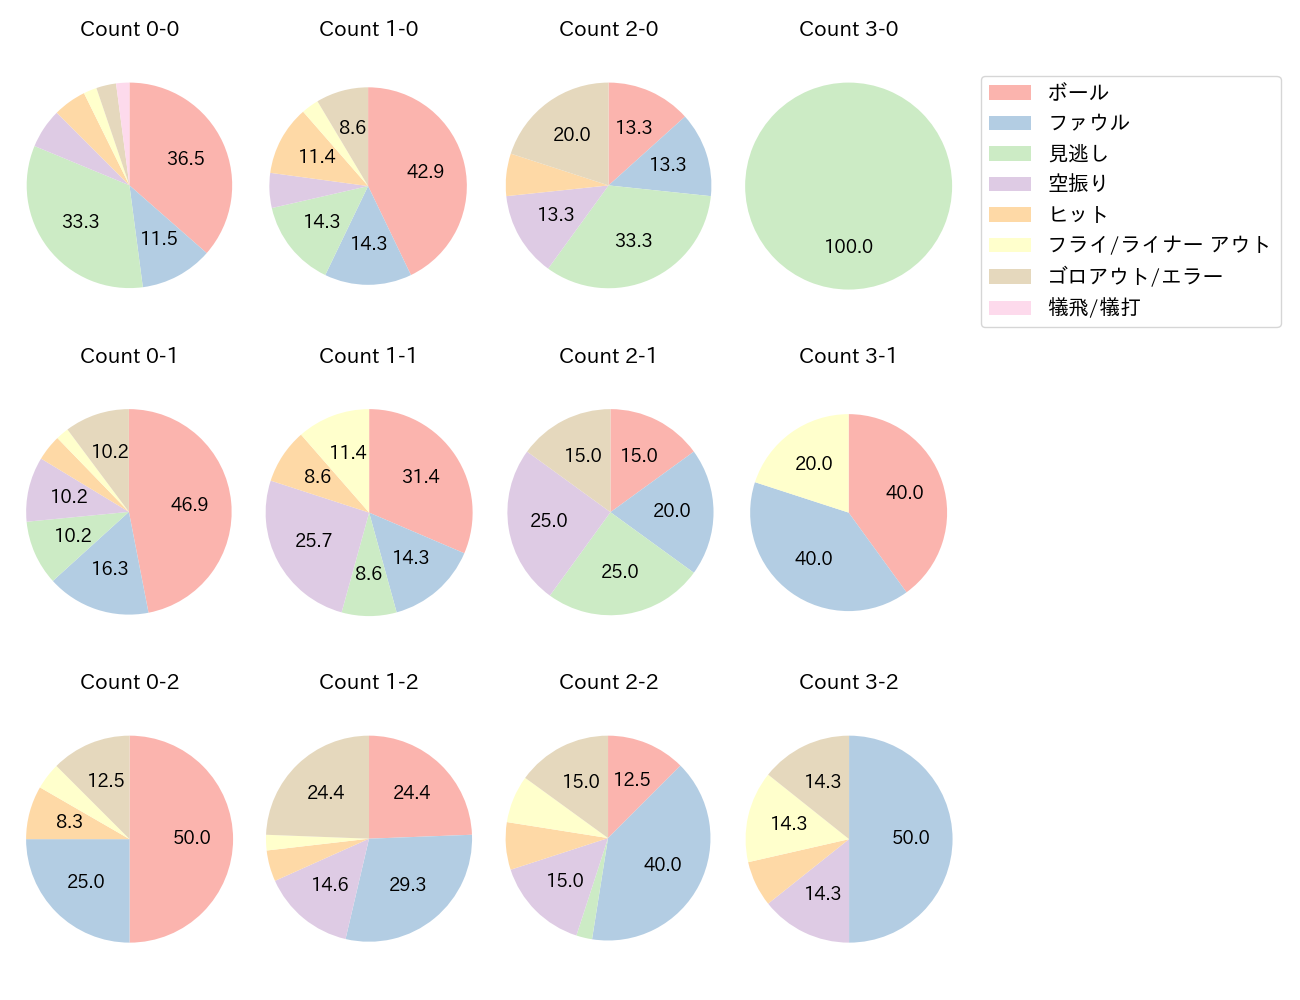 吉川 尚輝の球数分布(2021年9月)